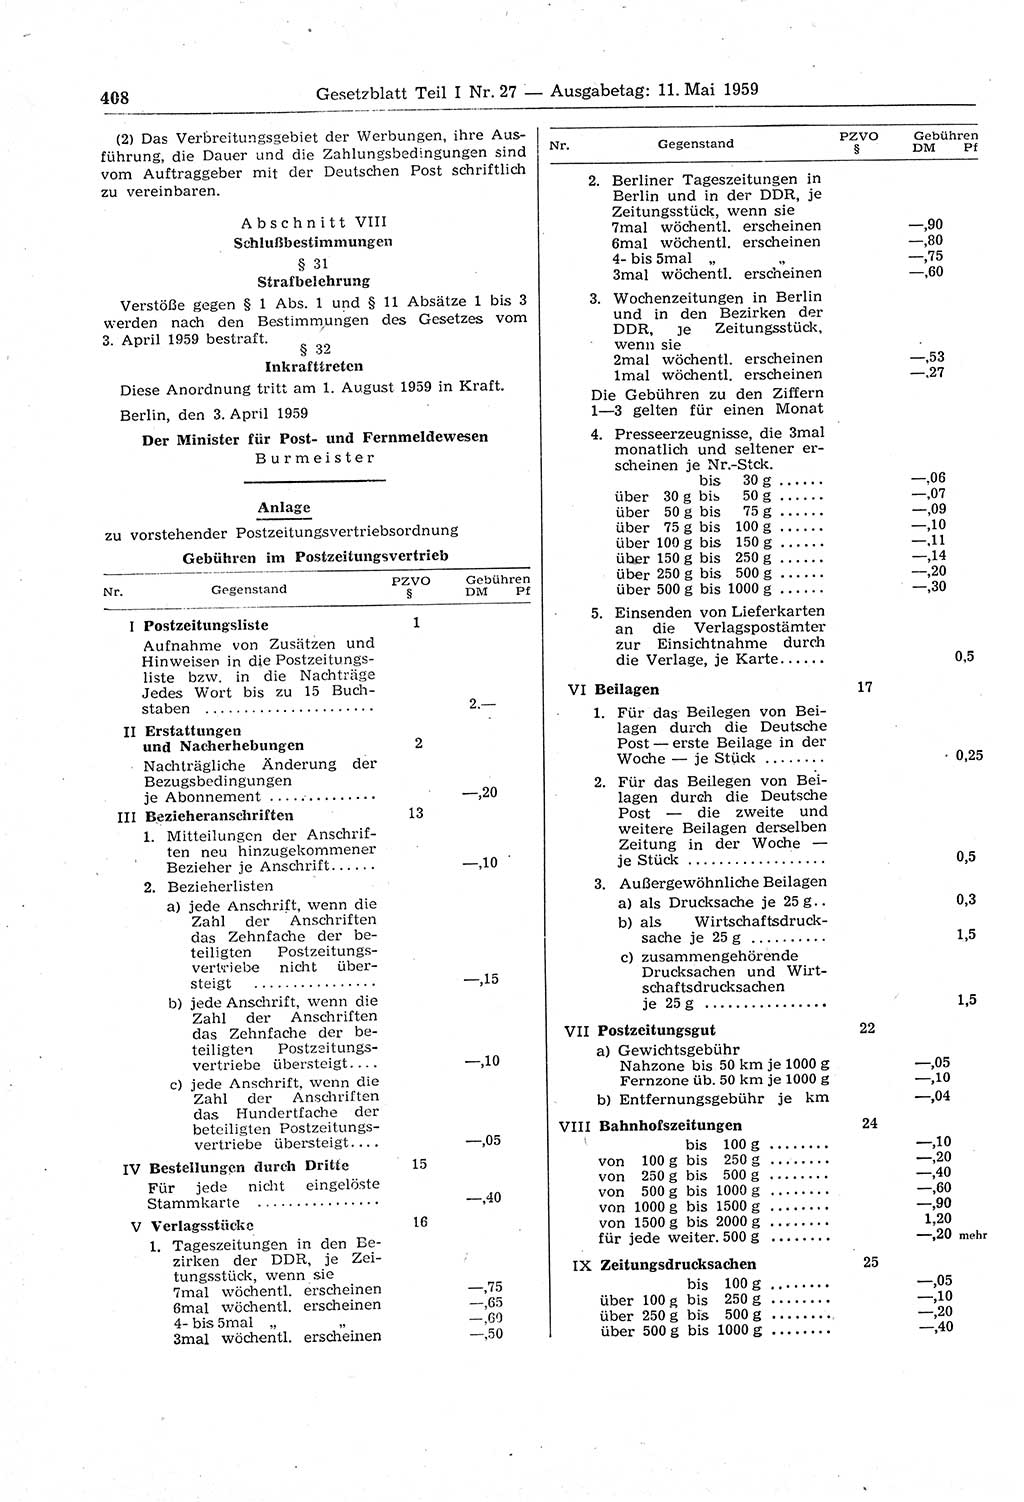 Gesetzblatt (GBl.) der Deutschen Demokratischen Republik (DDR) Teil Ⅰ 1959, Seite 408 (GBl. DDR Ⅰ 1959, S. 408)